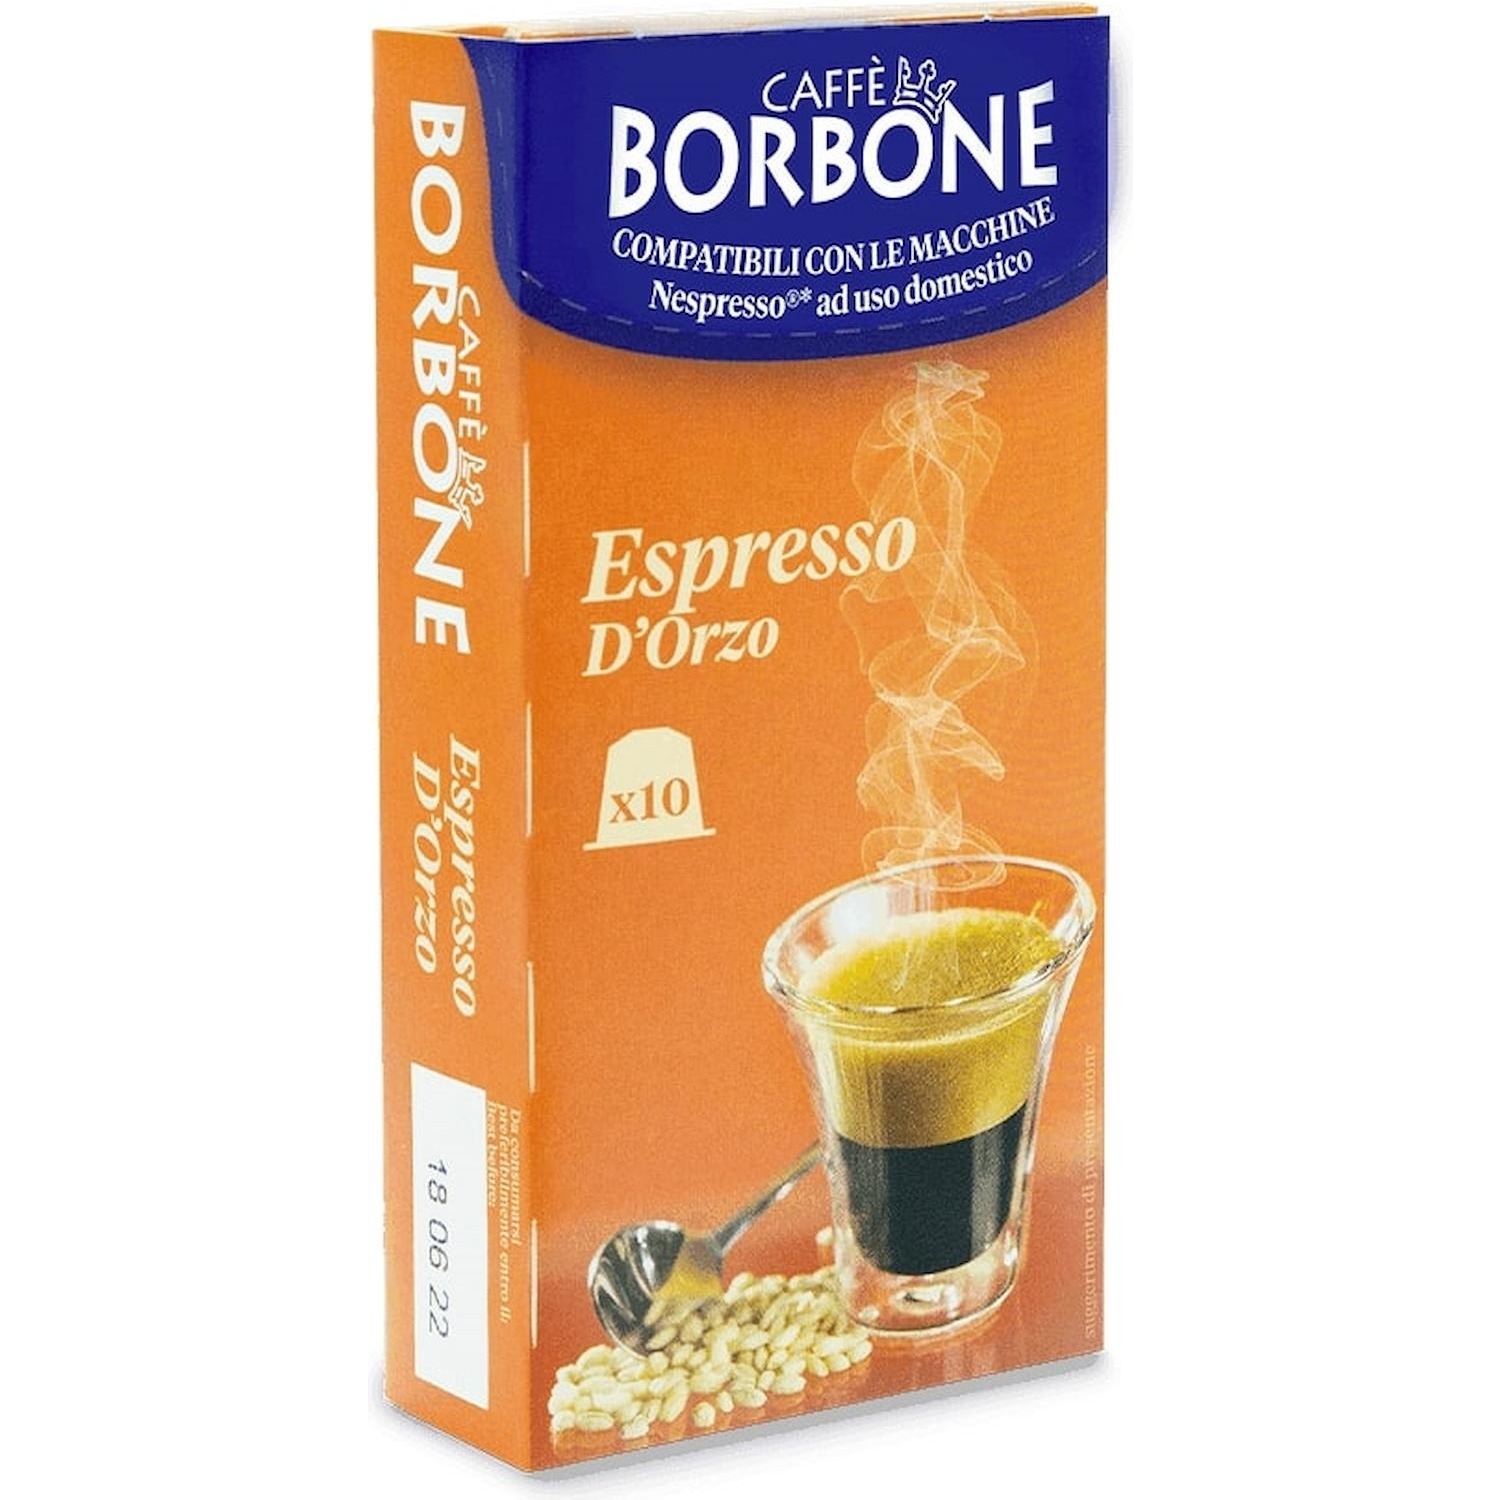 Immagine per Capsule Caffe' Borbone Espresso d'Orzo 10 capsule Compatibile Nespresso da DIMOStore